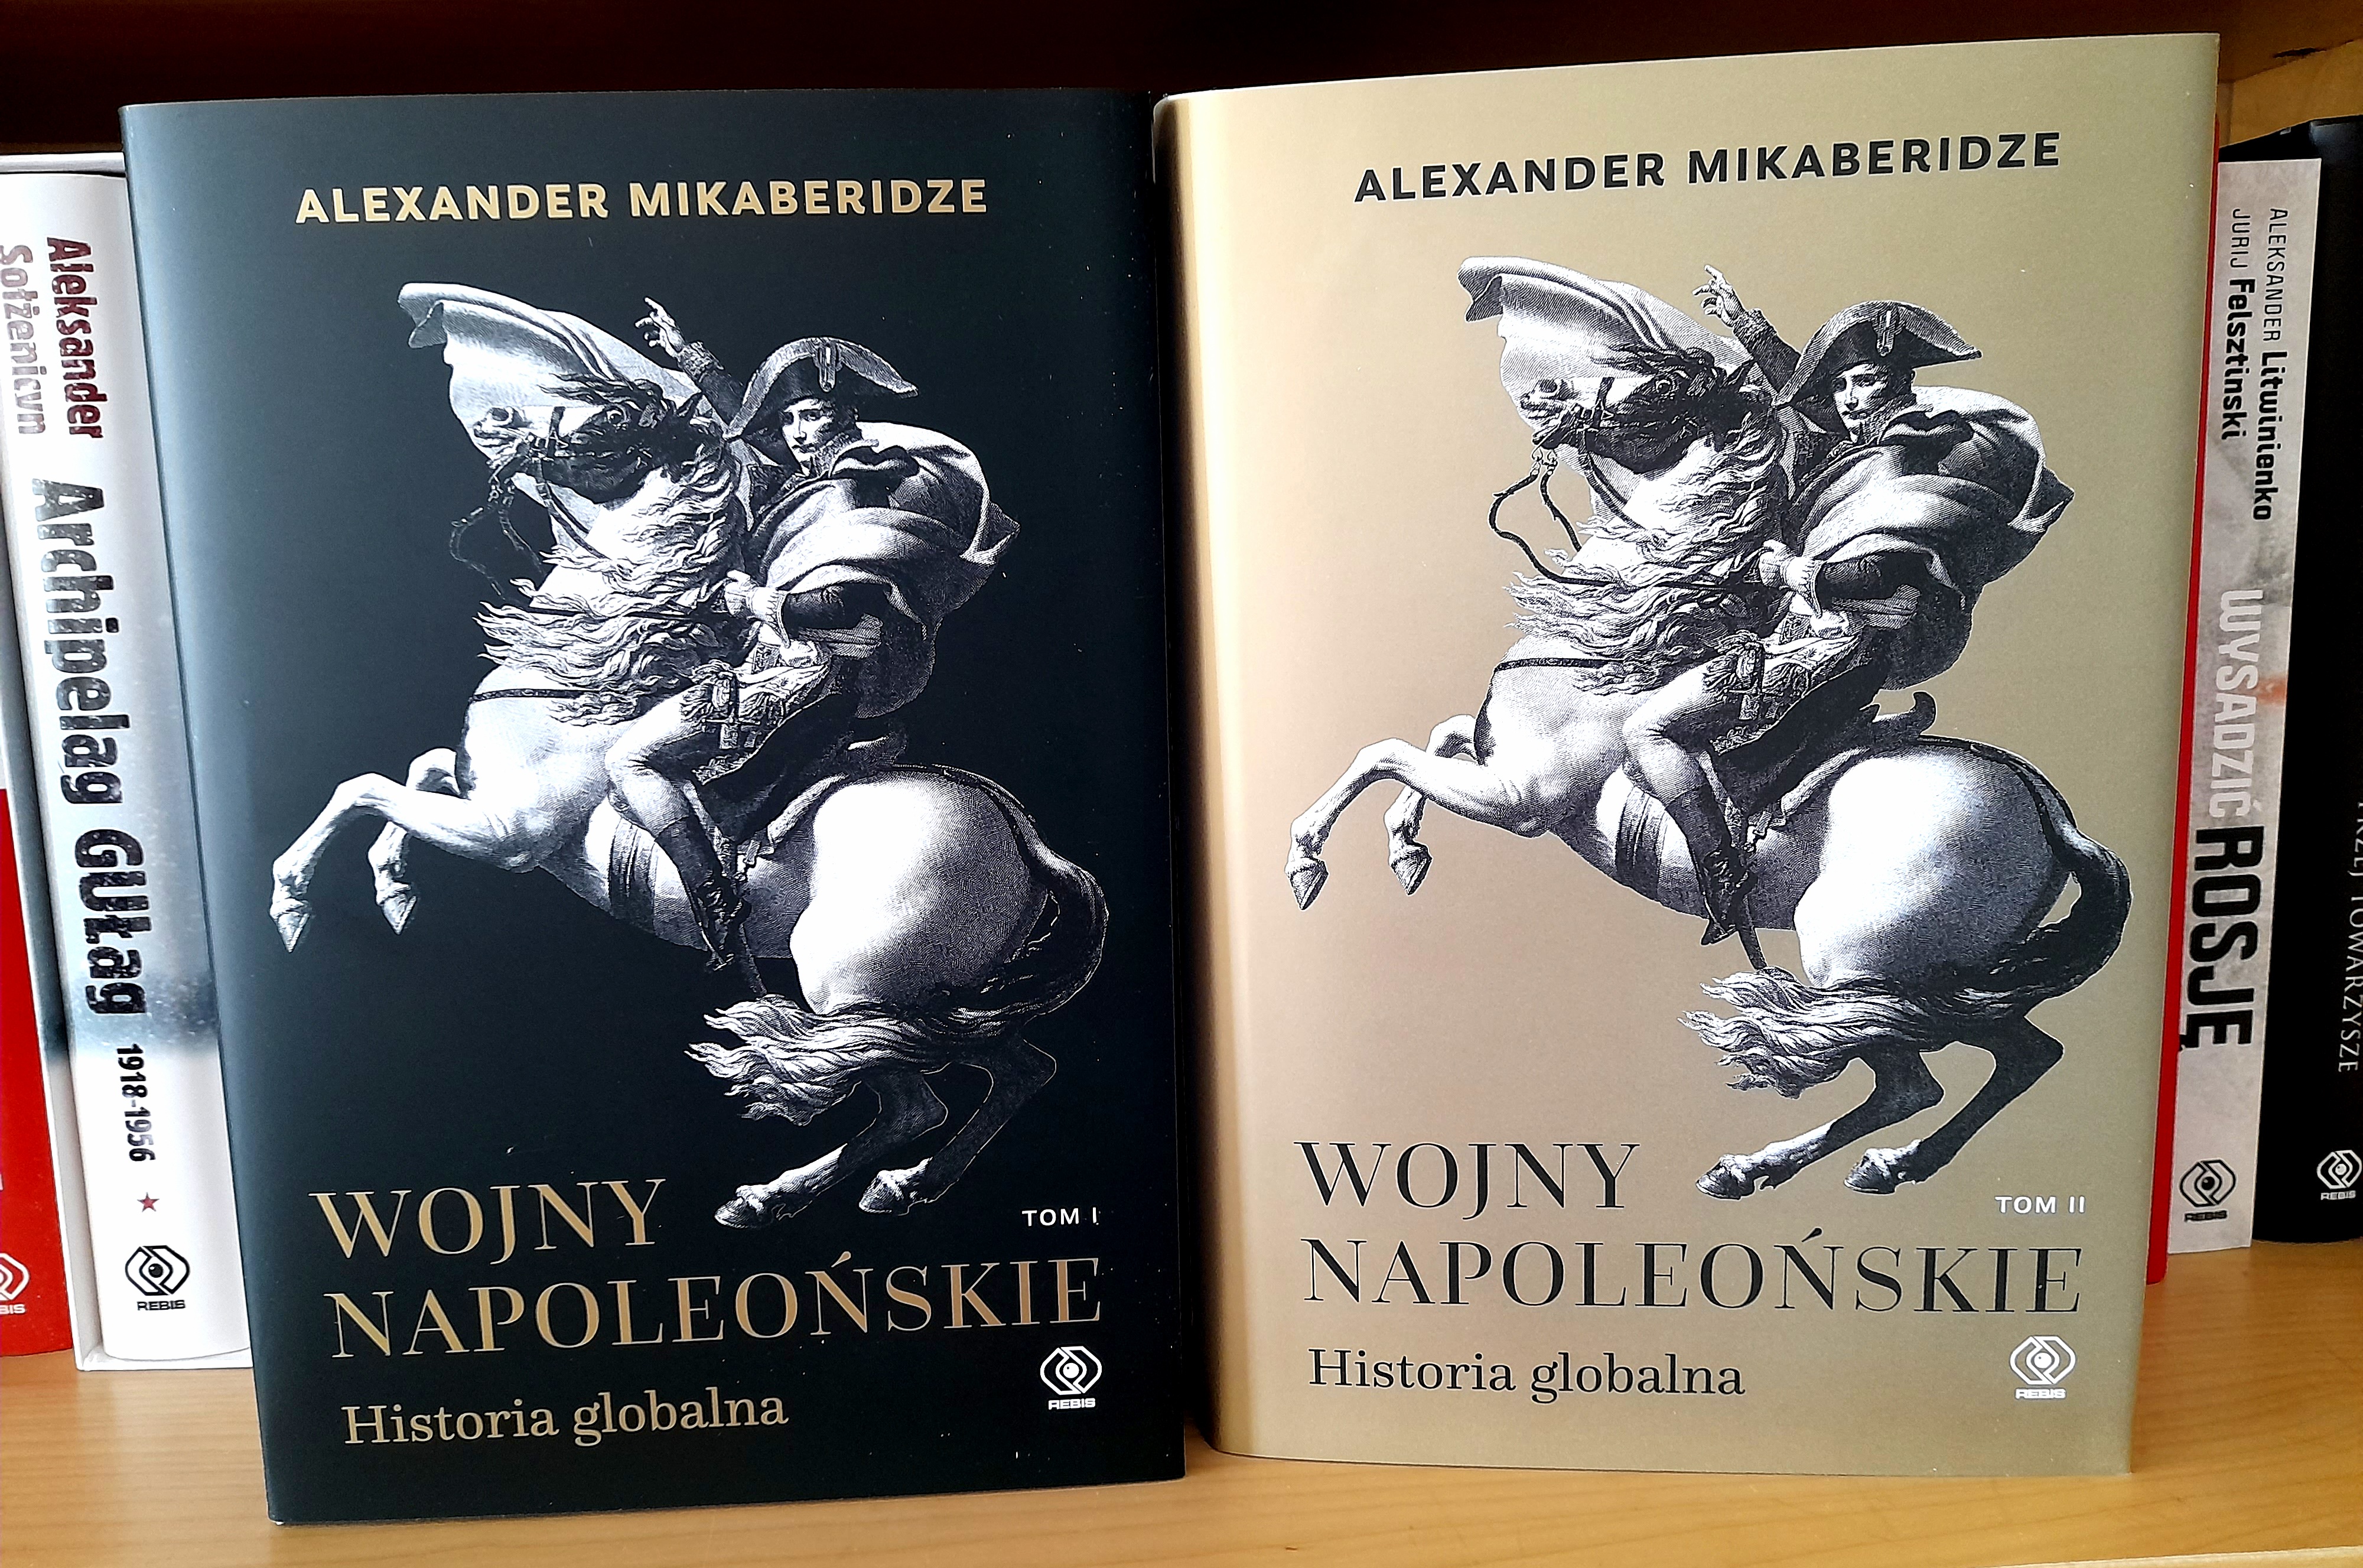 16 maja trafi do księgarń 2 tom "Wojen napoleońskich" Alexandra Mikaberidze